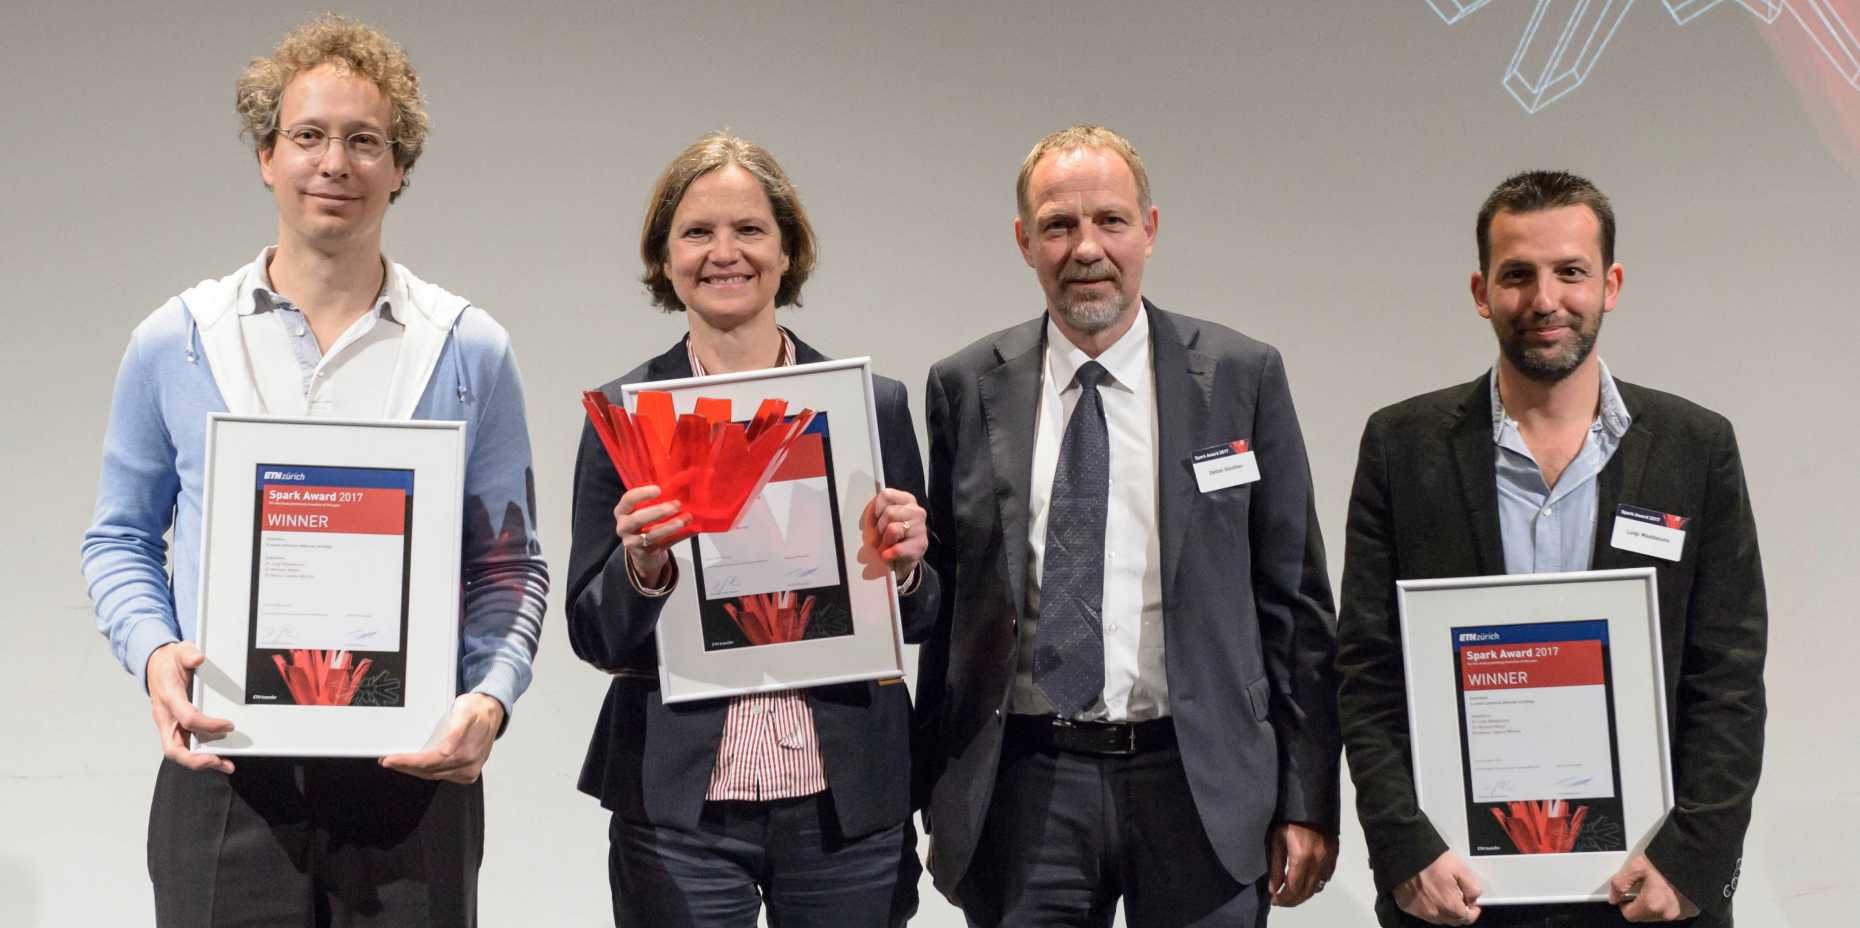 Vergr?sserte Ansicht: Sabine Werner mit Spark Award